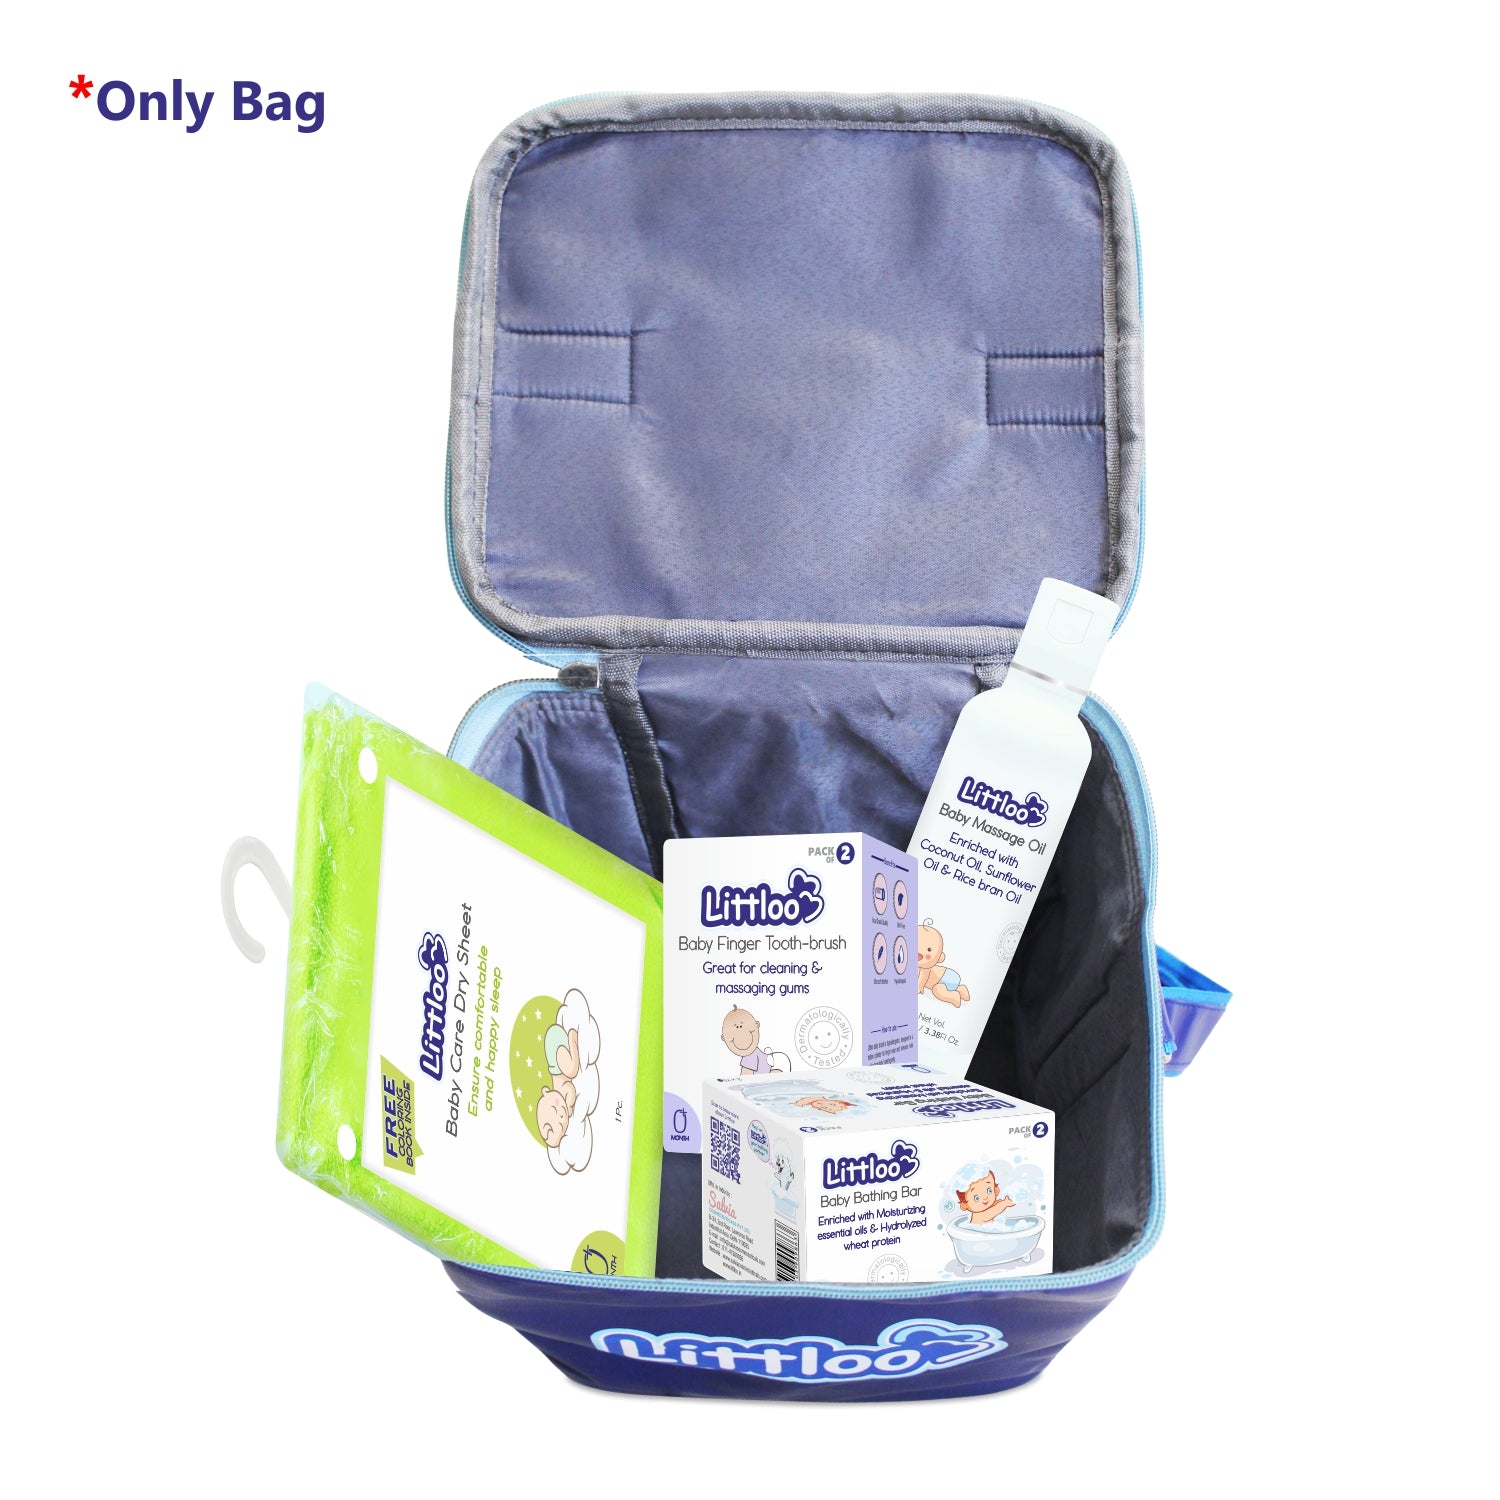 Littloo Carry Bag | Multipurpose Baby Bag For Travel - Littloo